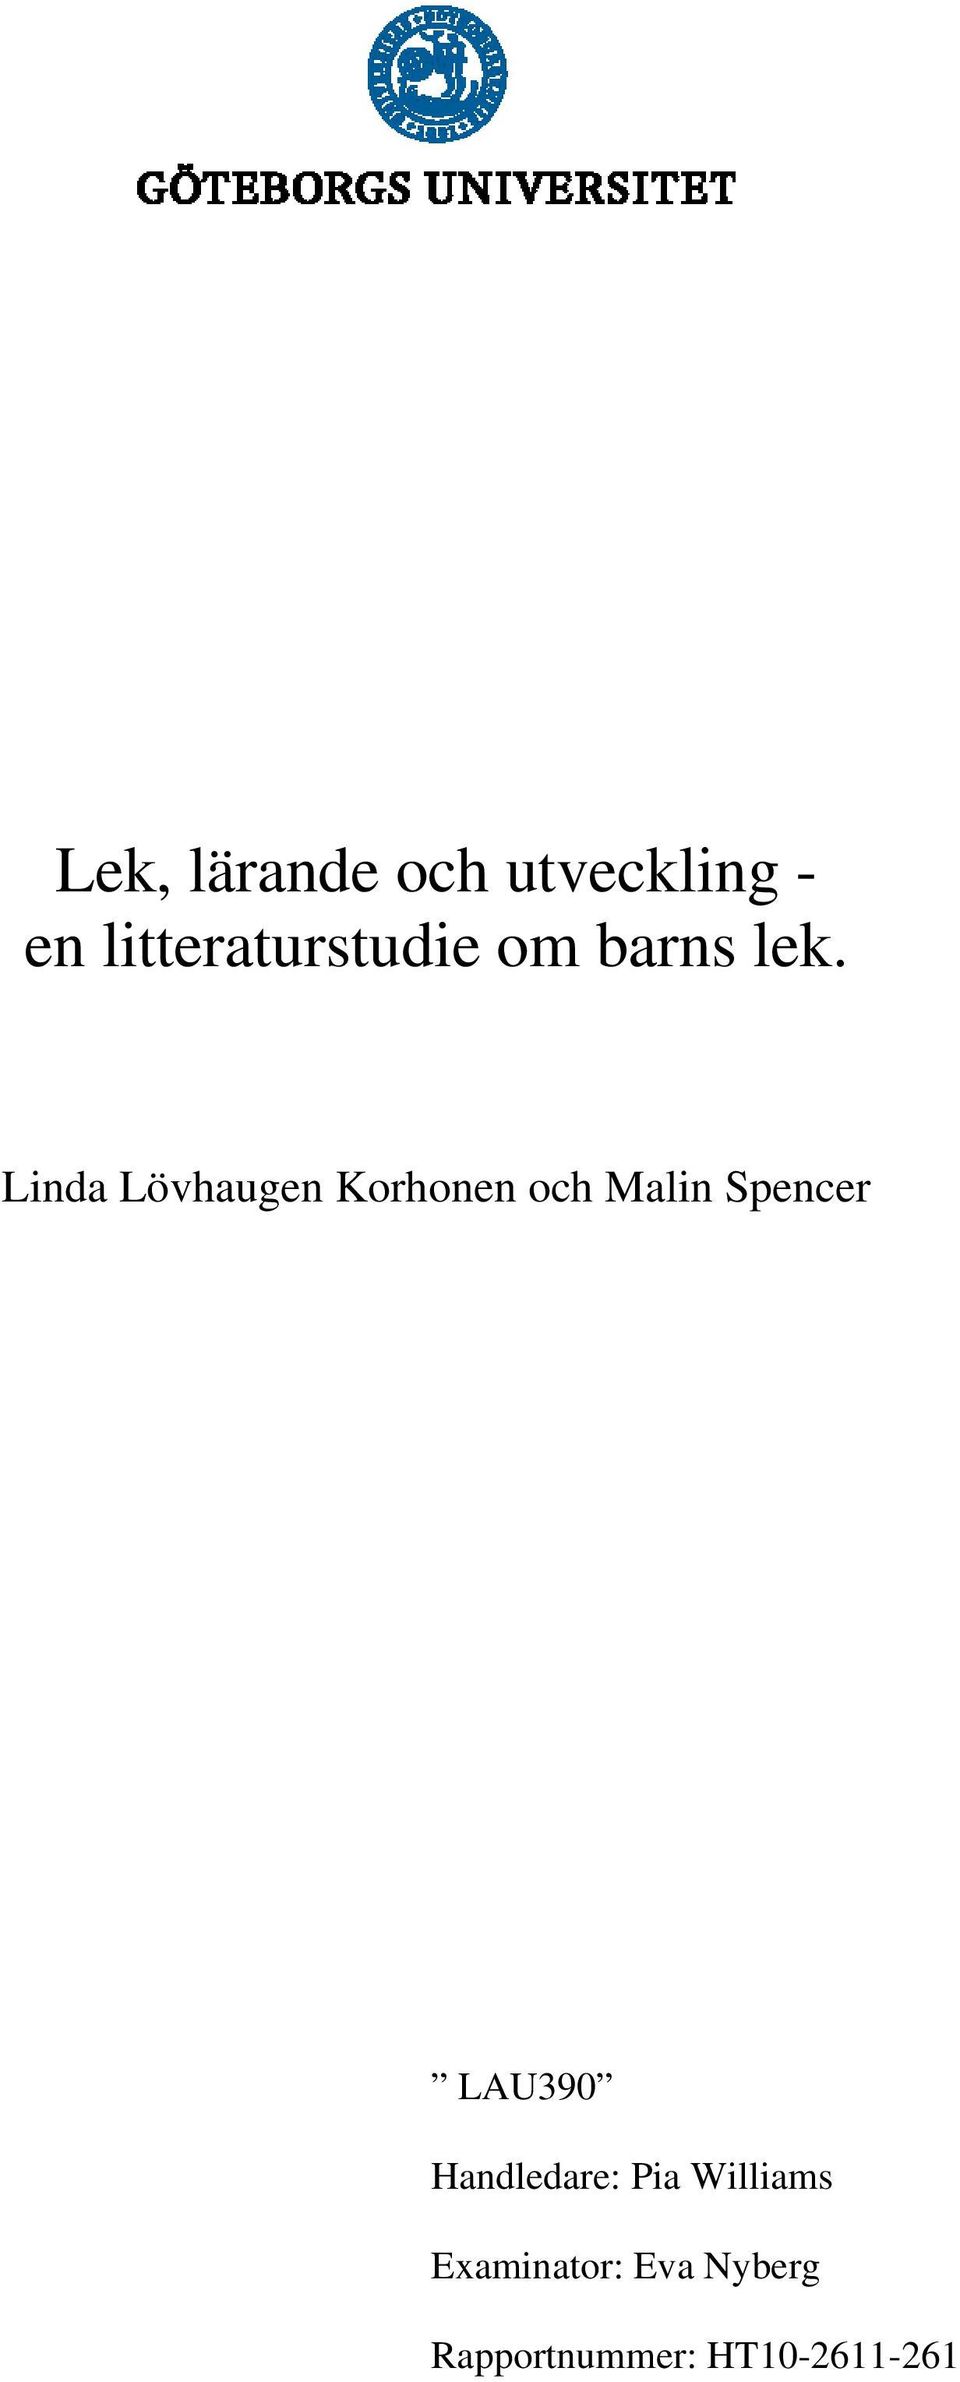 Linda Lövhaugen Korhonen och Malin Spencer